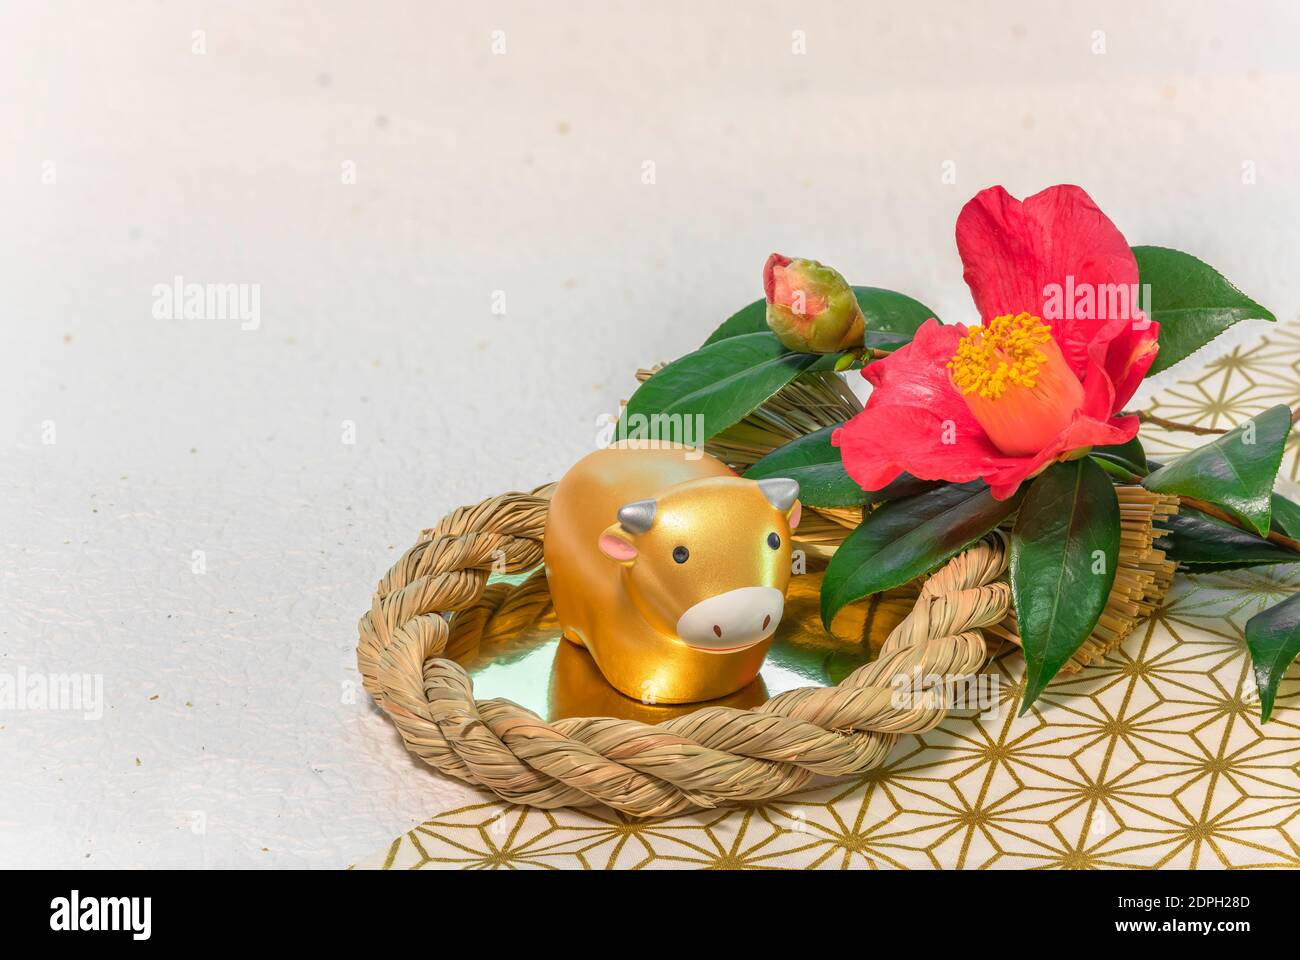 Biglietto d'auguri giapponese con un fiore Tsubaki chiamato l'inverno Rosa e una statuina animale zodiacale di vacca in a. Ornamento di paglia per l'anno della Ox Foto Stock